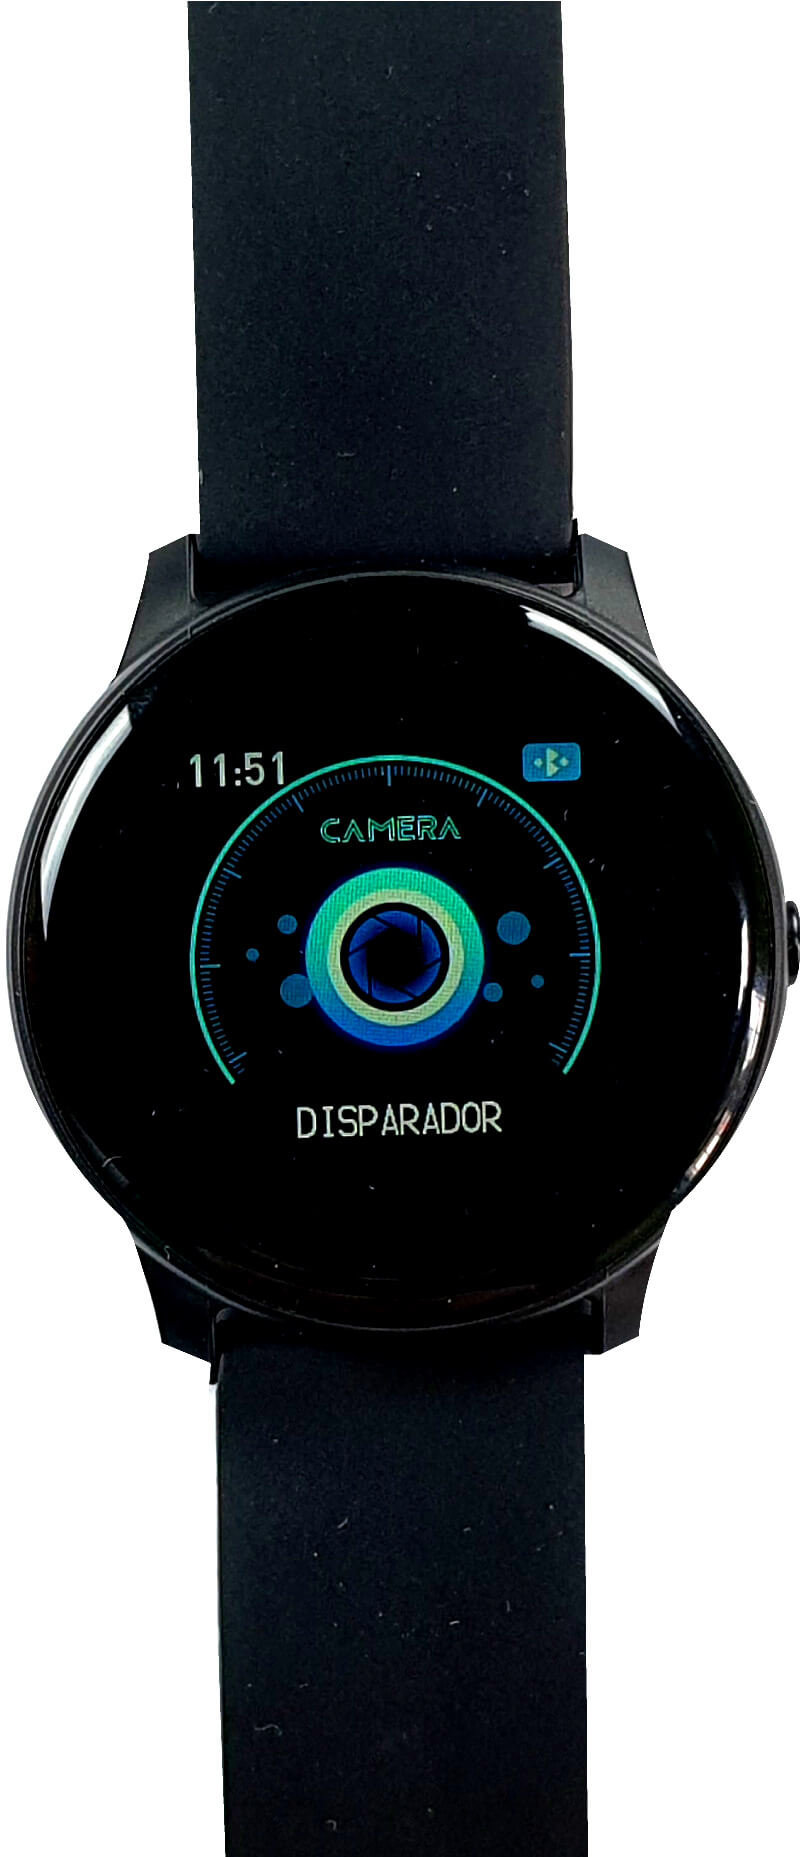 Review Hyundai Pulse 4 P240: Decente smartwatch a un buen precio